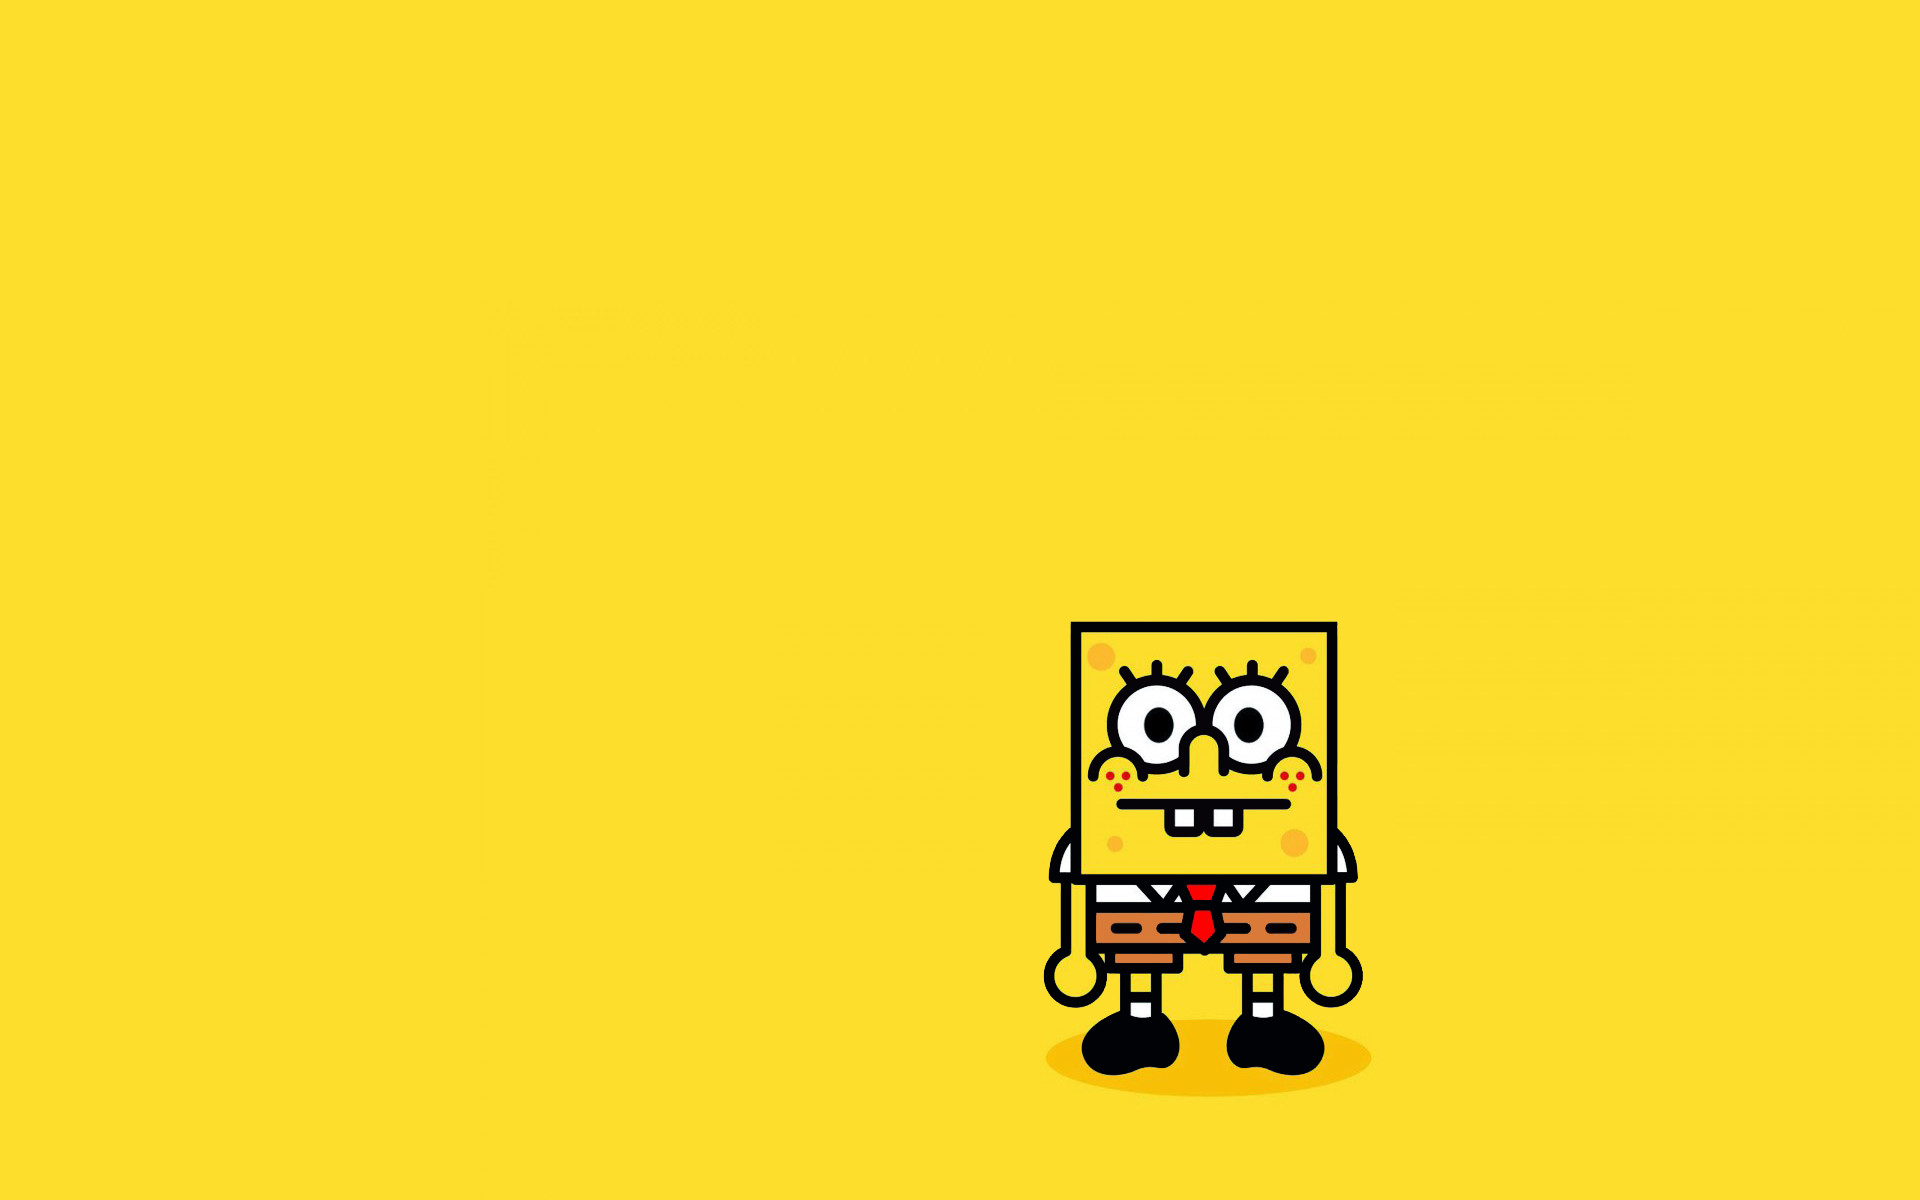 i don't care  Spongebob wallpaper, Spongebob iphone wallpaper, Iphone  wallpaper yellow